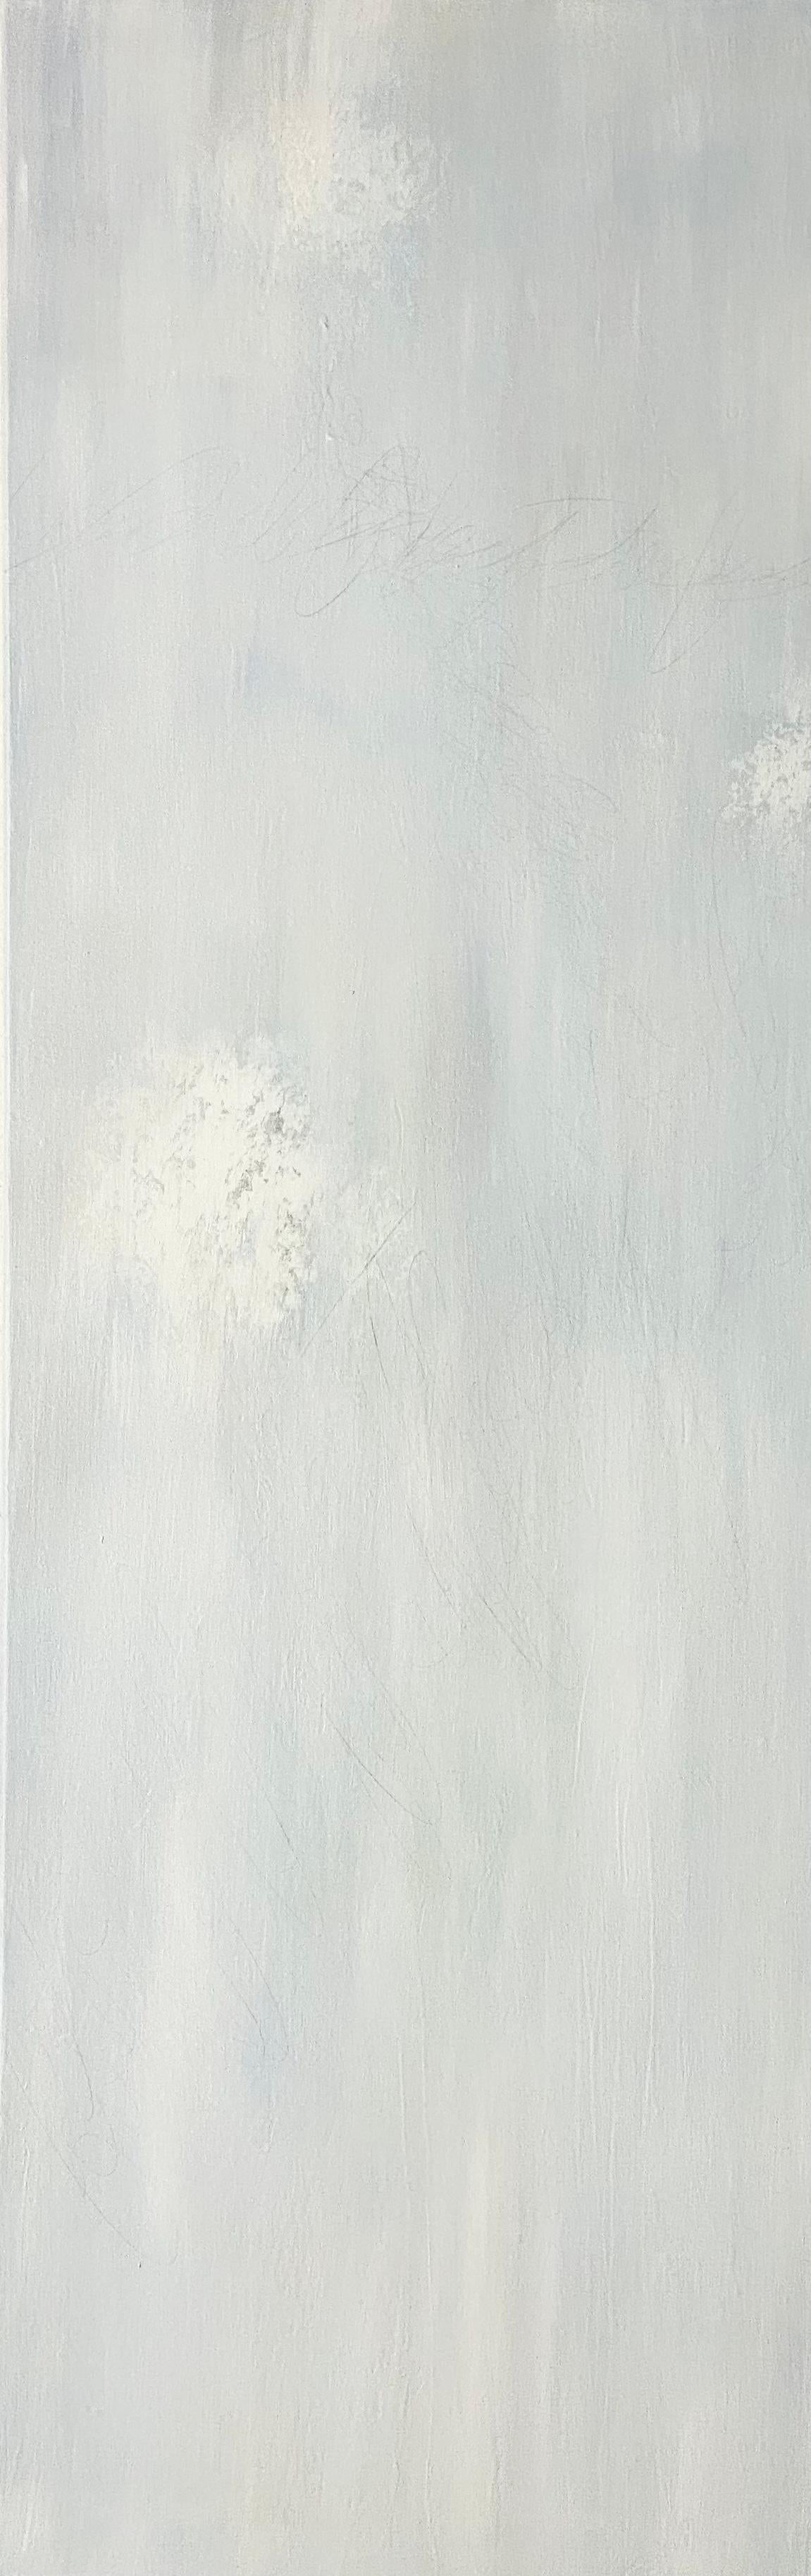 Pour simplicitys sake, contemporain, classique, Triptyque, blanc sur blanc, 3 panneaux - Painting de Juanita Bellavance 